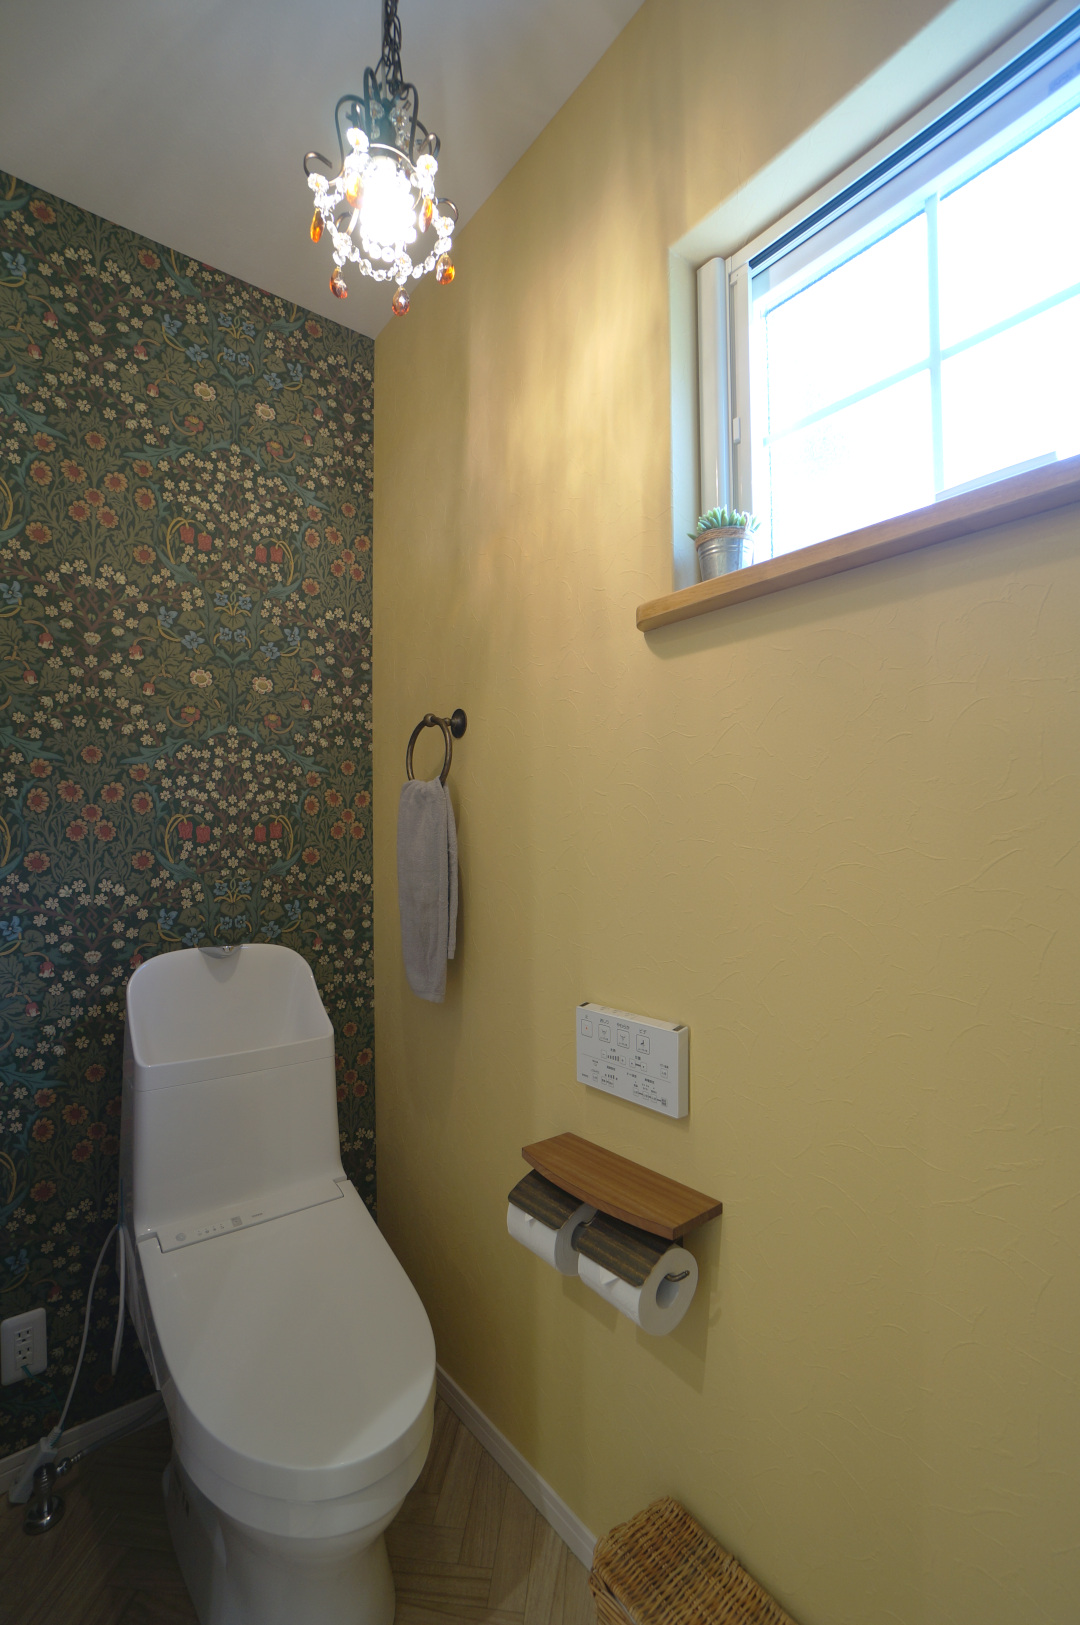 おしゃれなウィリアムモリス壁紙をアクセントにアンティークなシャンデリア照明が海外っぽいトイレ空間